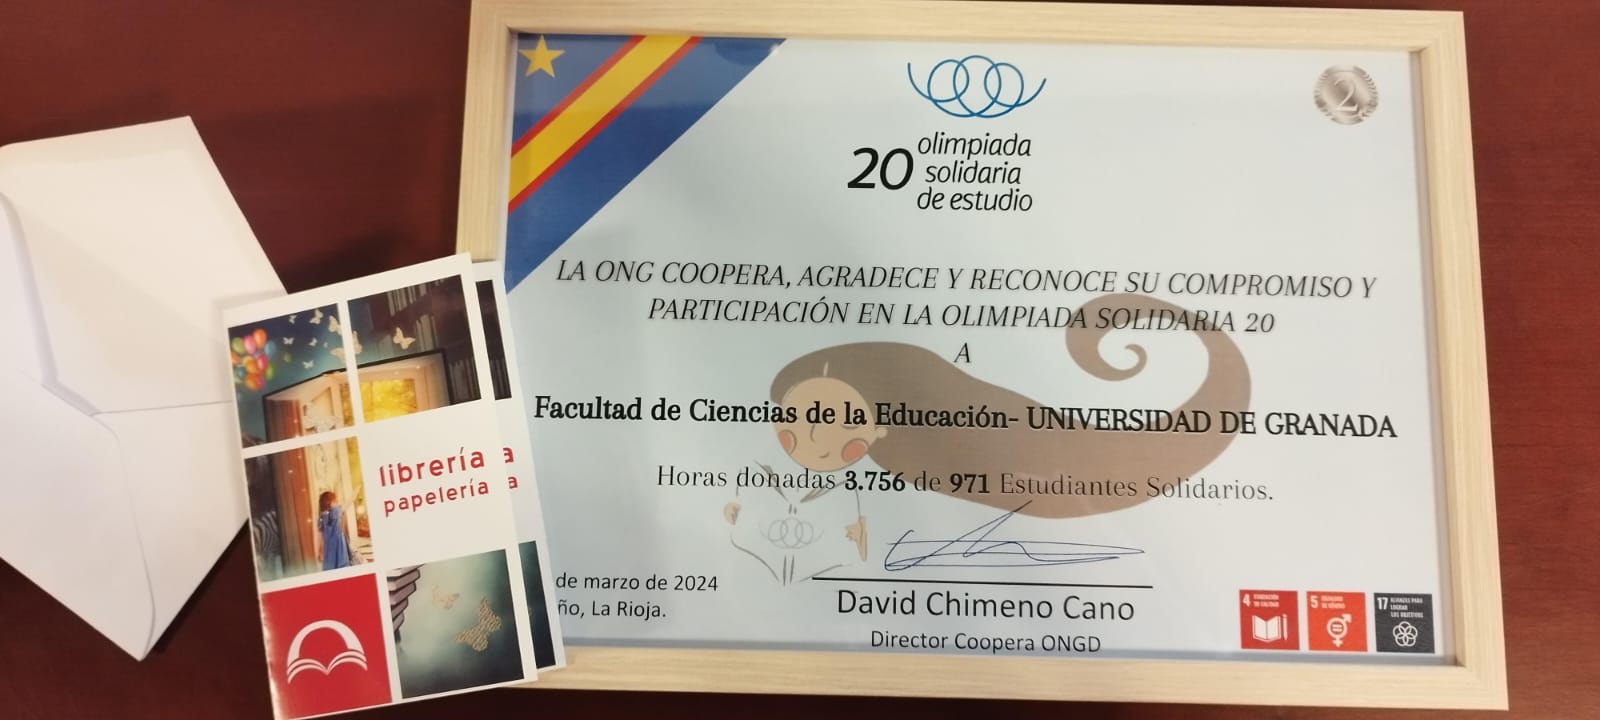 20 Olimpiada Solidaria de Estudio. Entrega de Premio a la Biblioteca de la Universidad de Granada